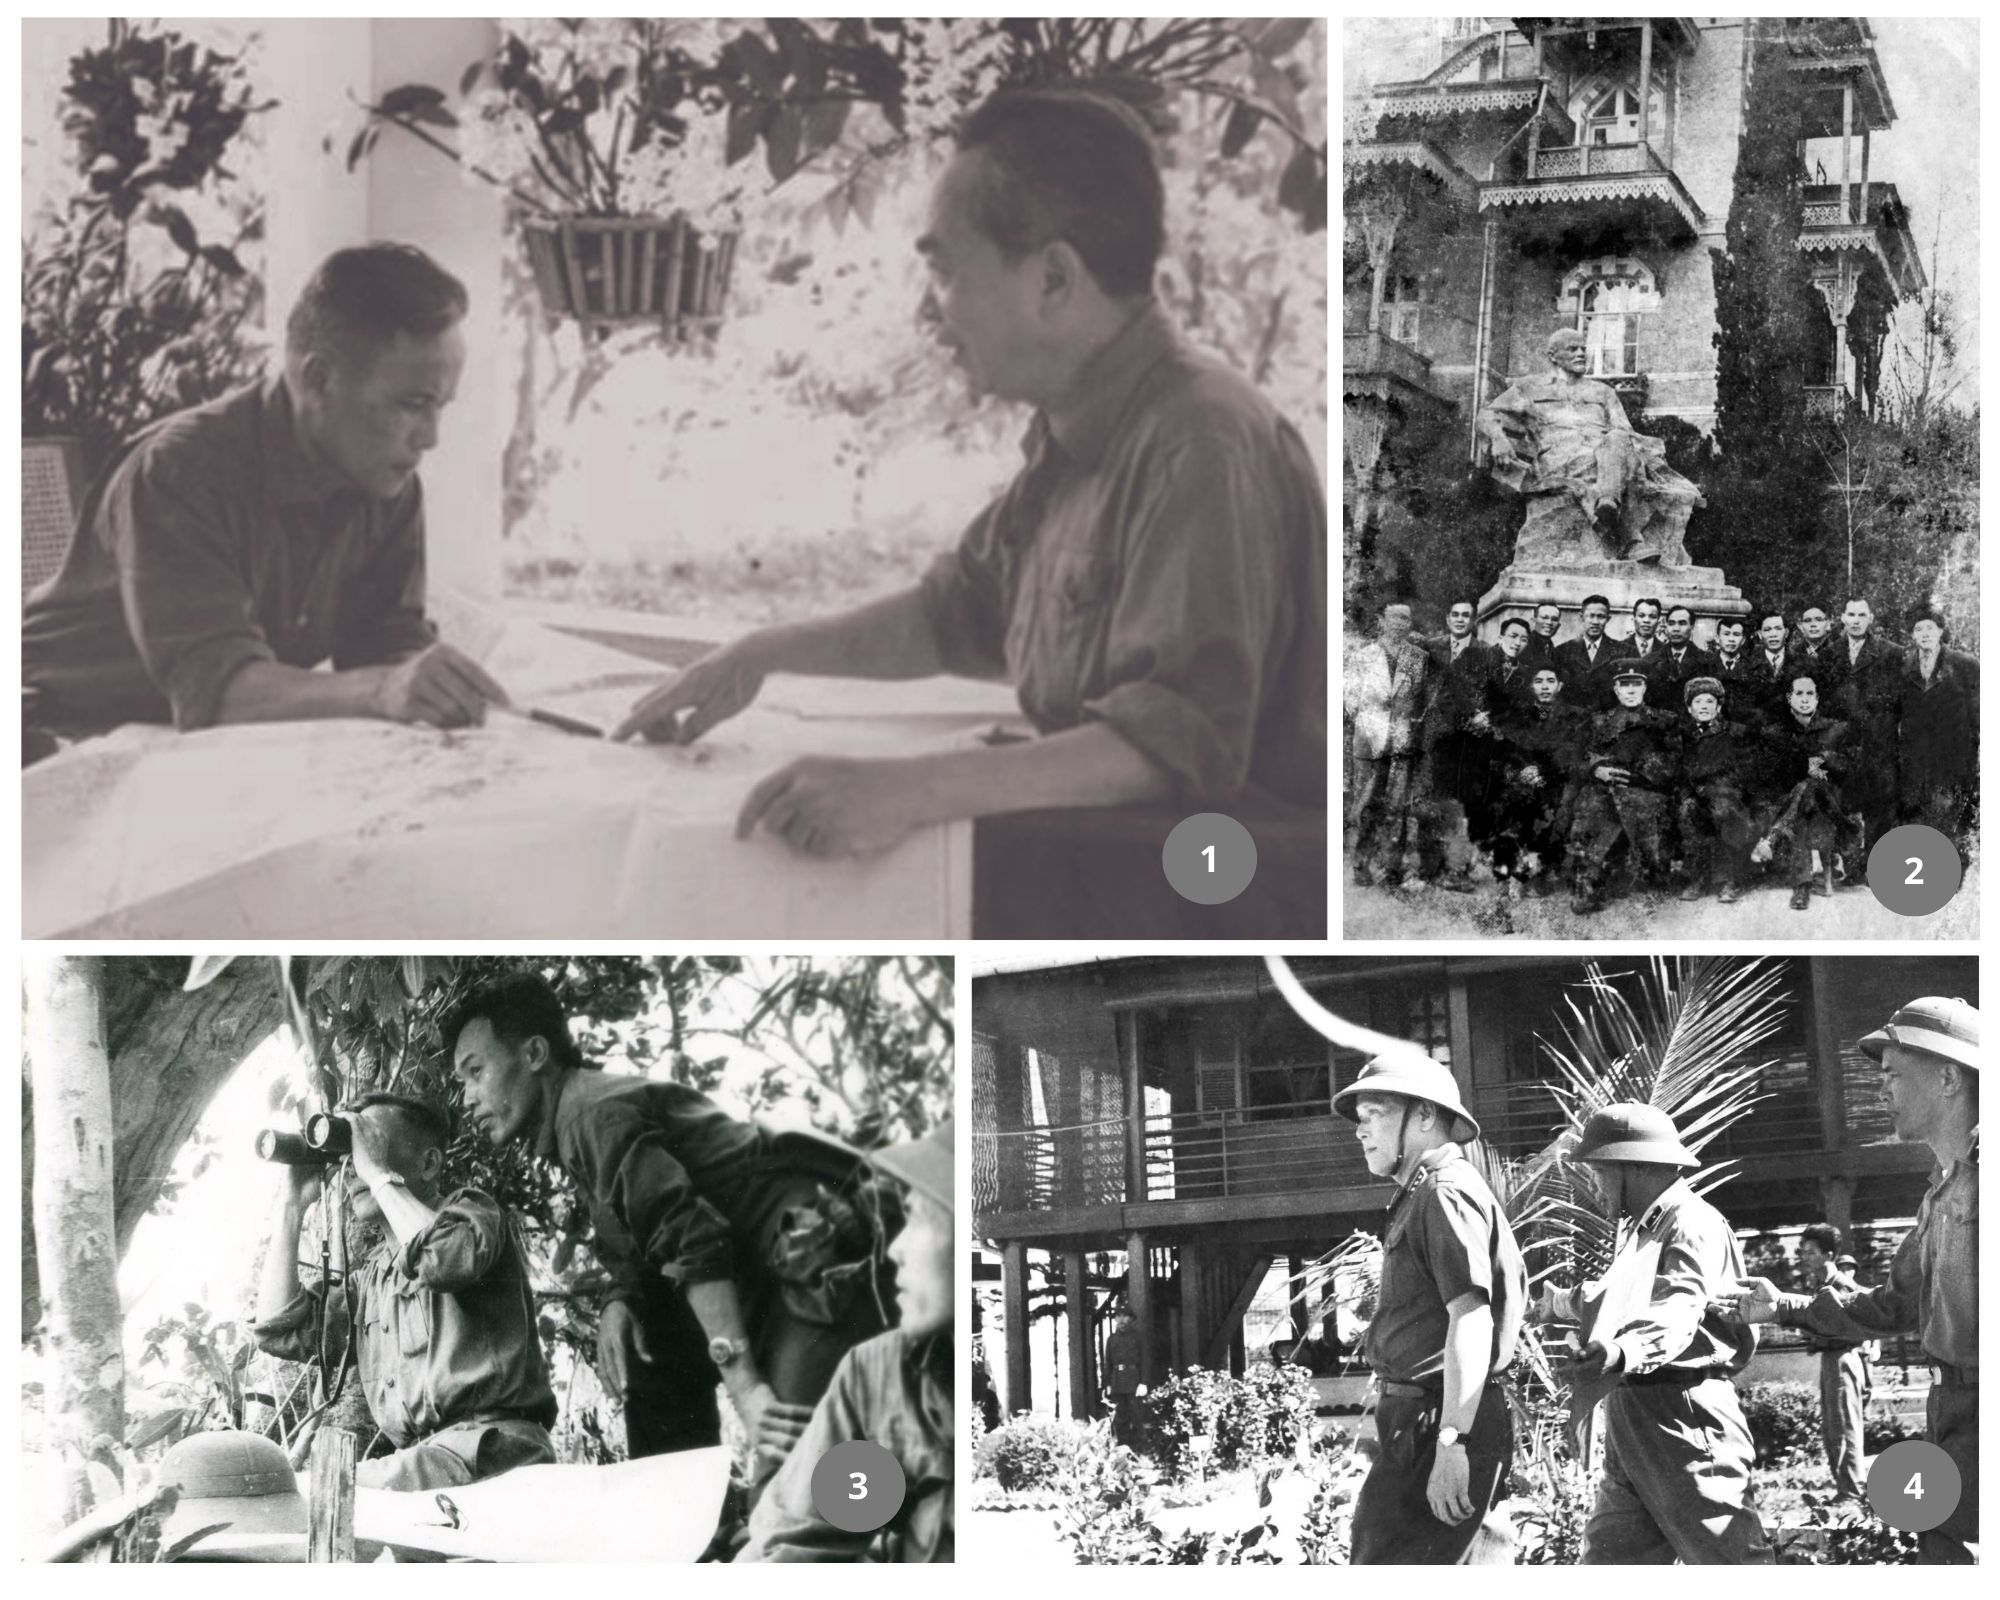 Kỷ niệm 110 năm Ngày sinh Đại tướng Chu Huy Mân (17-3-1913/17-3-2023): Chu Huy Mân - Cuộc đời và sự nghiệp